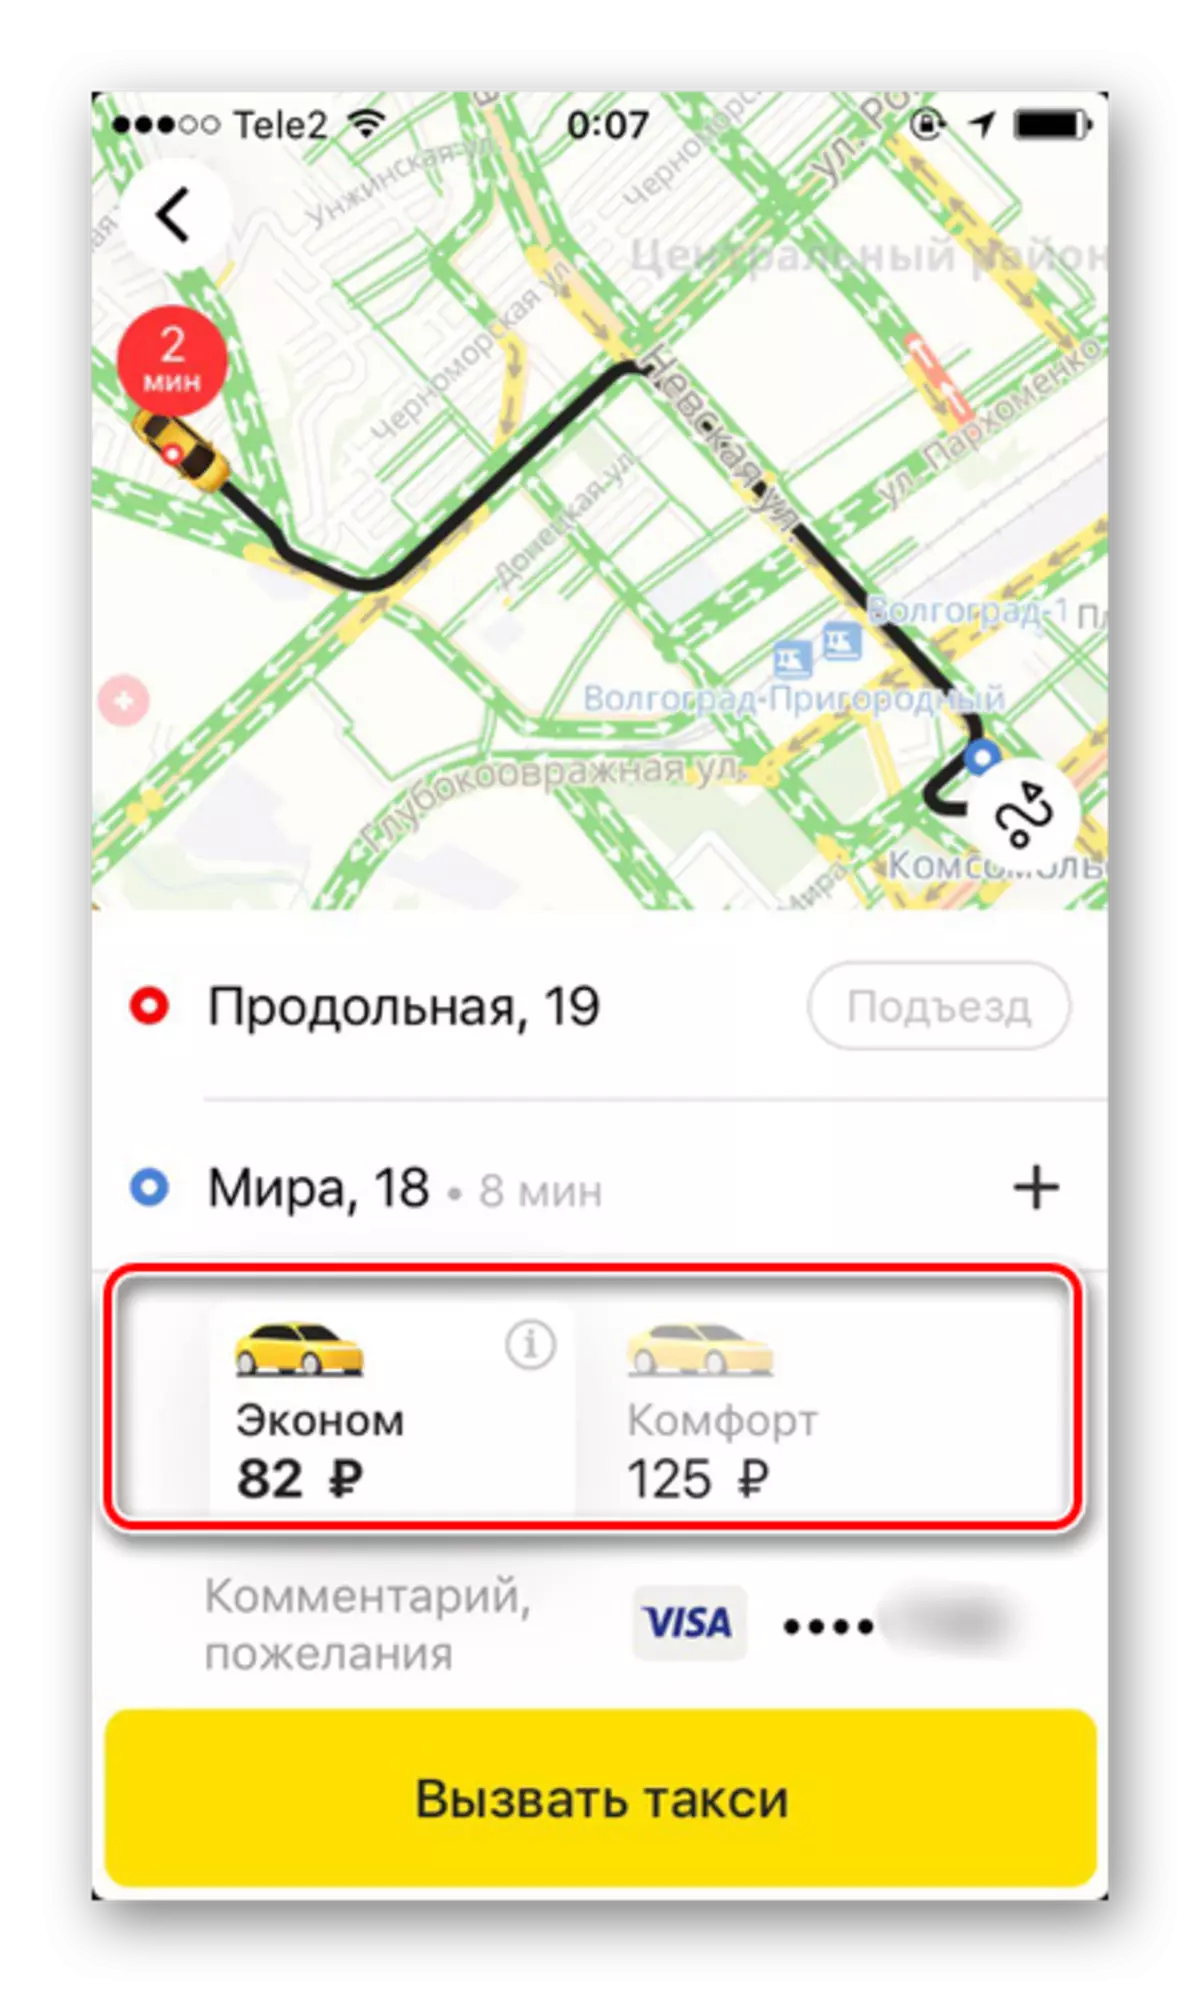 E nwere ta tagzi na Yandex.taxi na iPhone